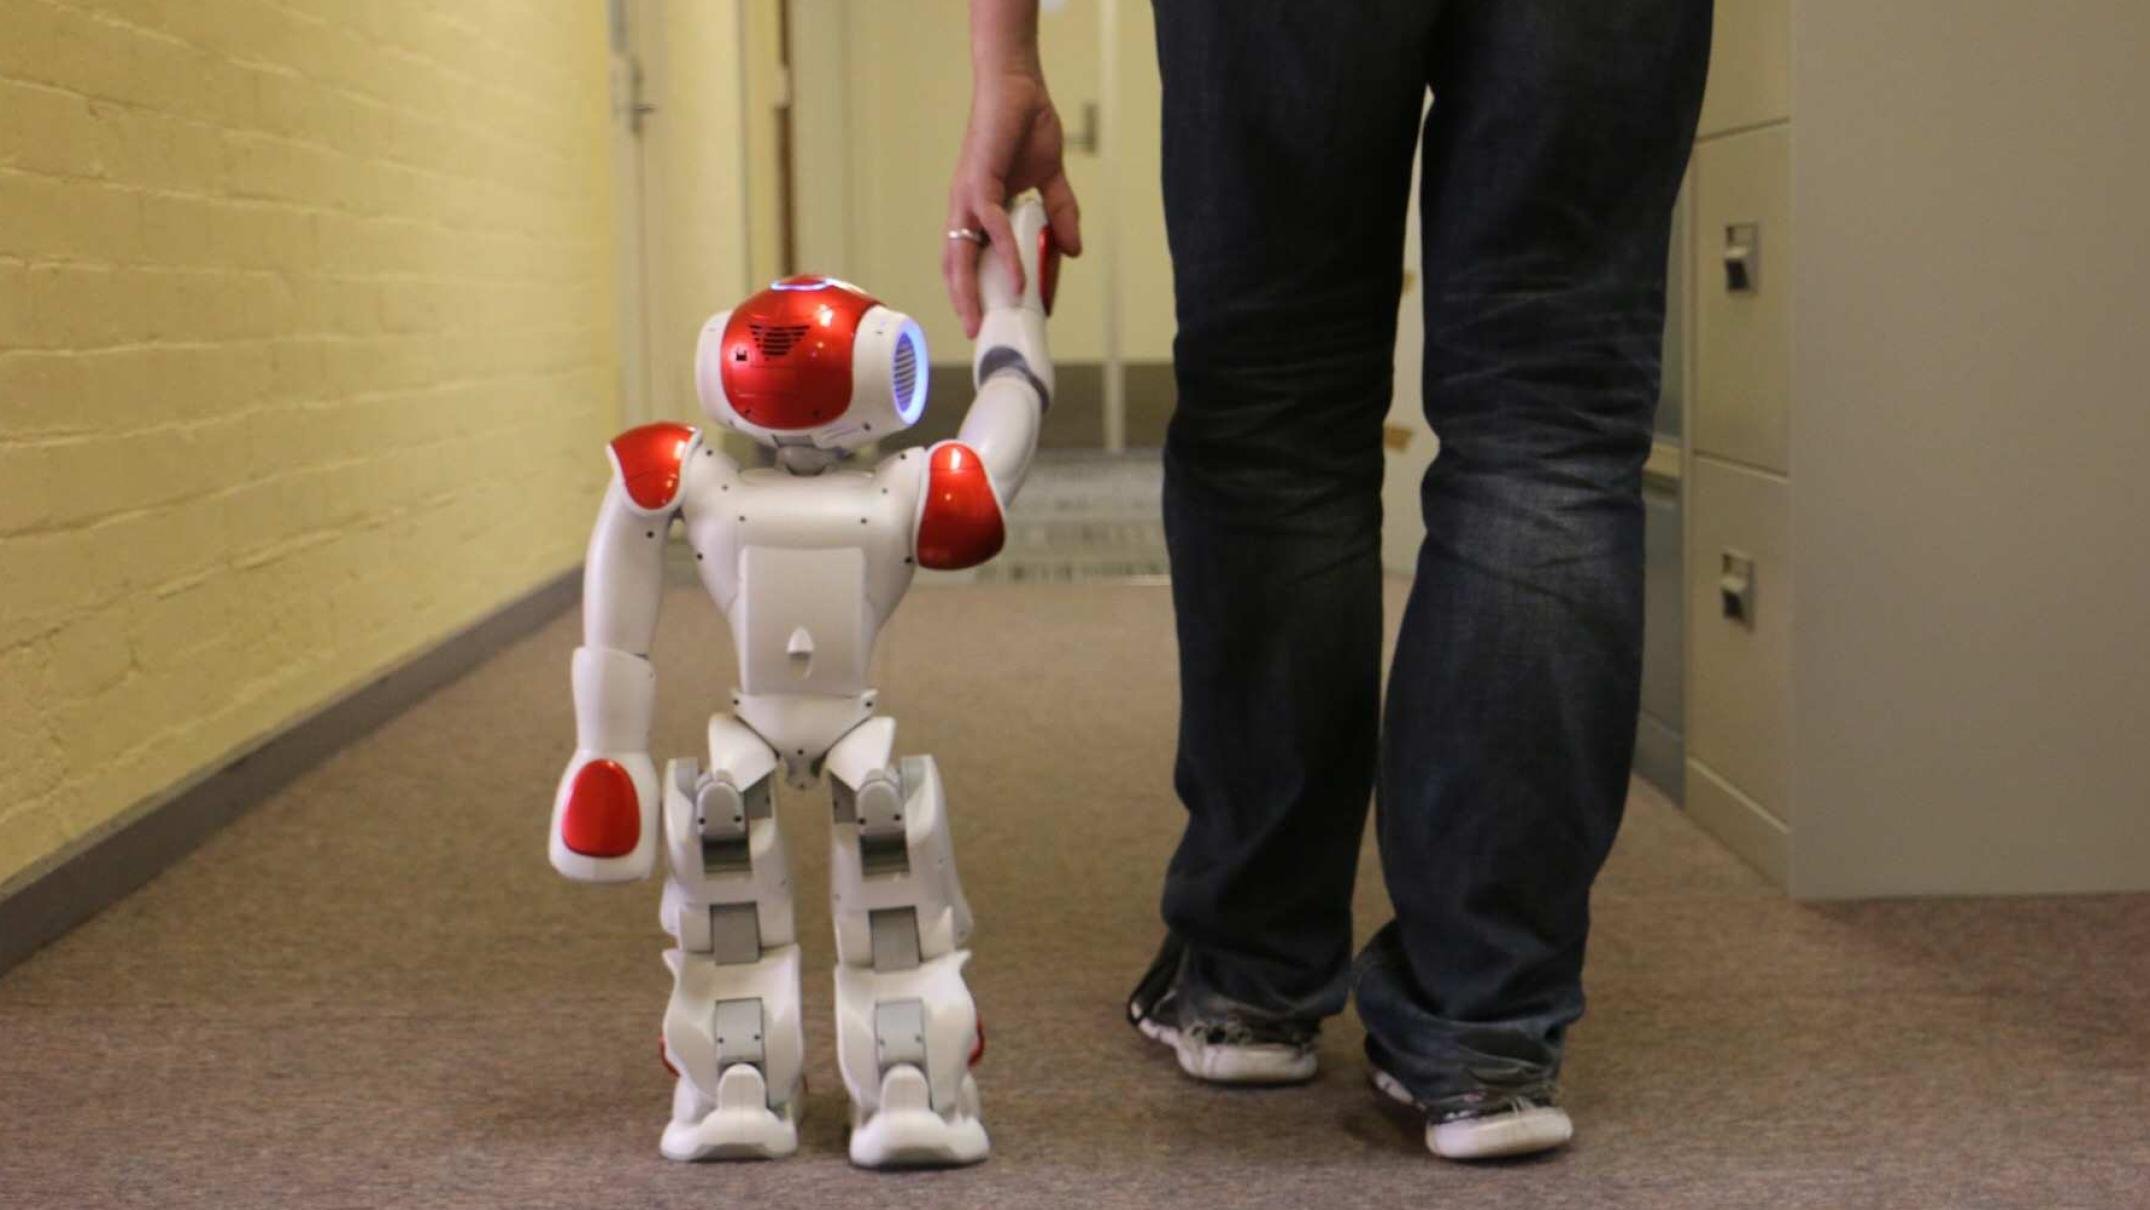 Хочу про роботов. Роботы и робототехника. Домашние роботы. Роботы для детей. Робот игрушечный.